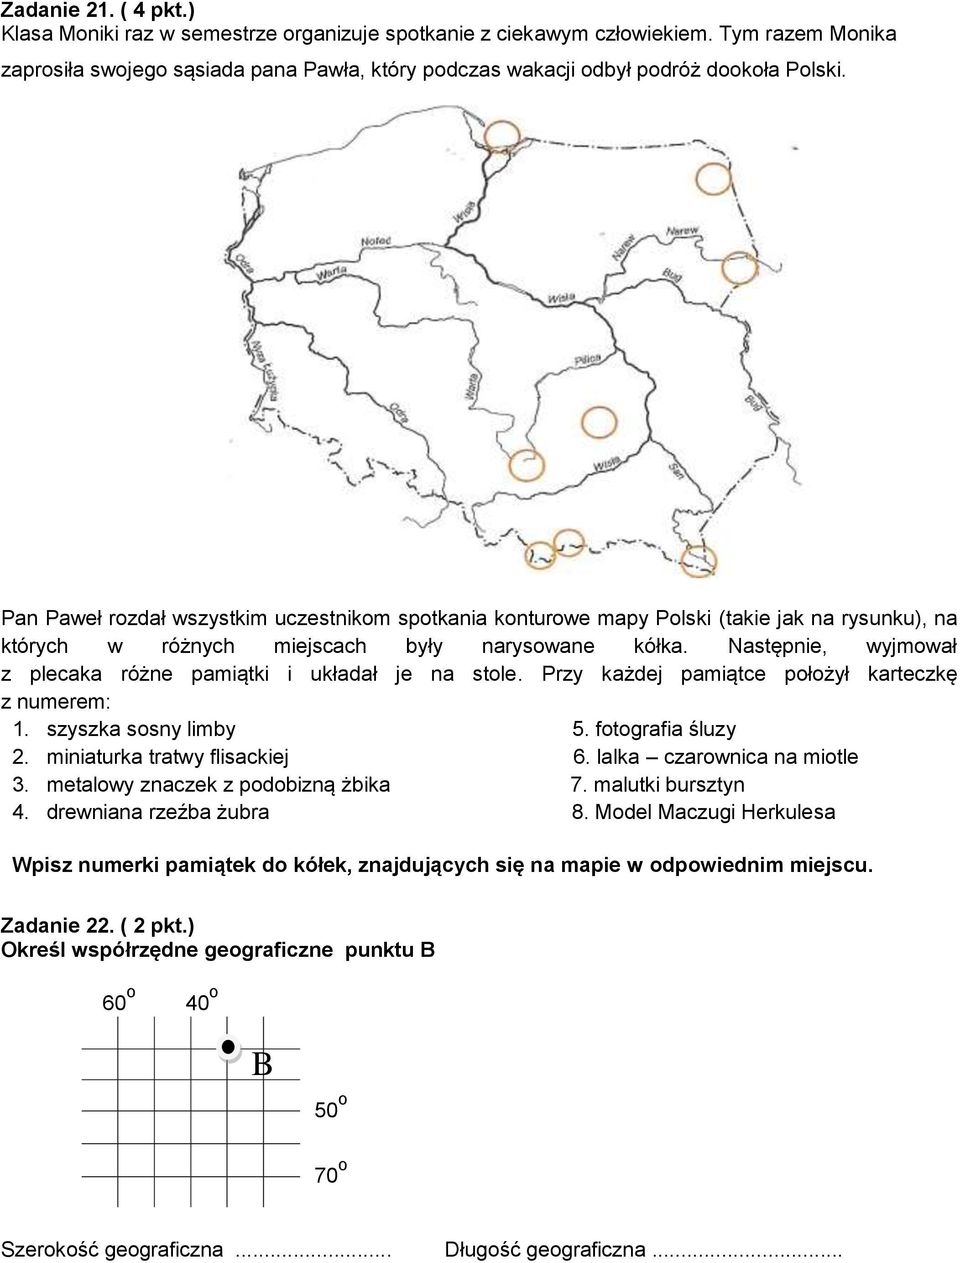 Pan Paweł rozdał wszystkim uczestnikom spotkania konturowe mapy Polski (takie jak na rysunku), na których w różnych miejscach były narysowane kółka.